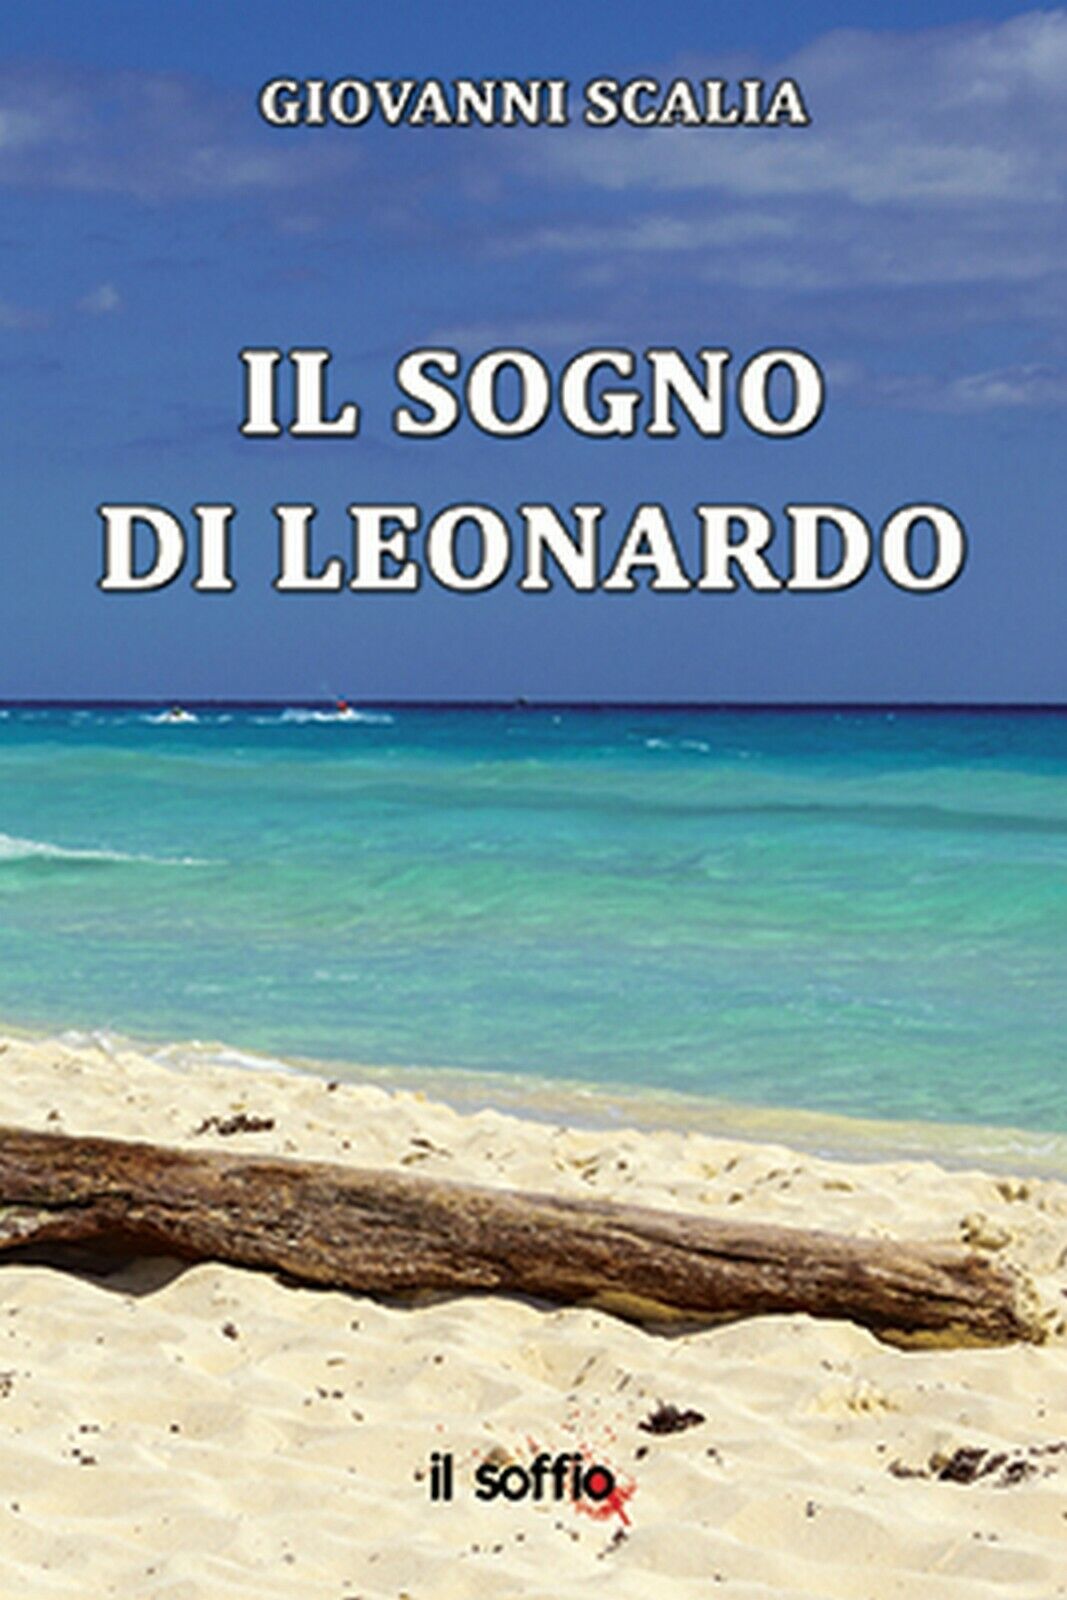 Il sogno di Leonardo  di Giovanni Scalia,  Algra Editore